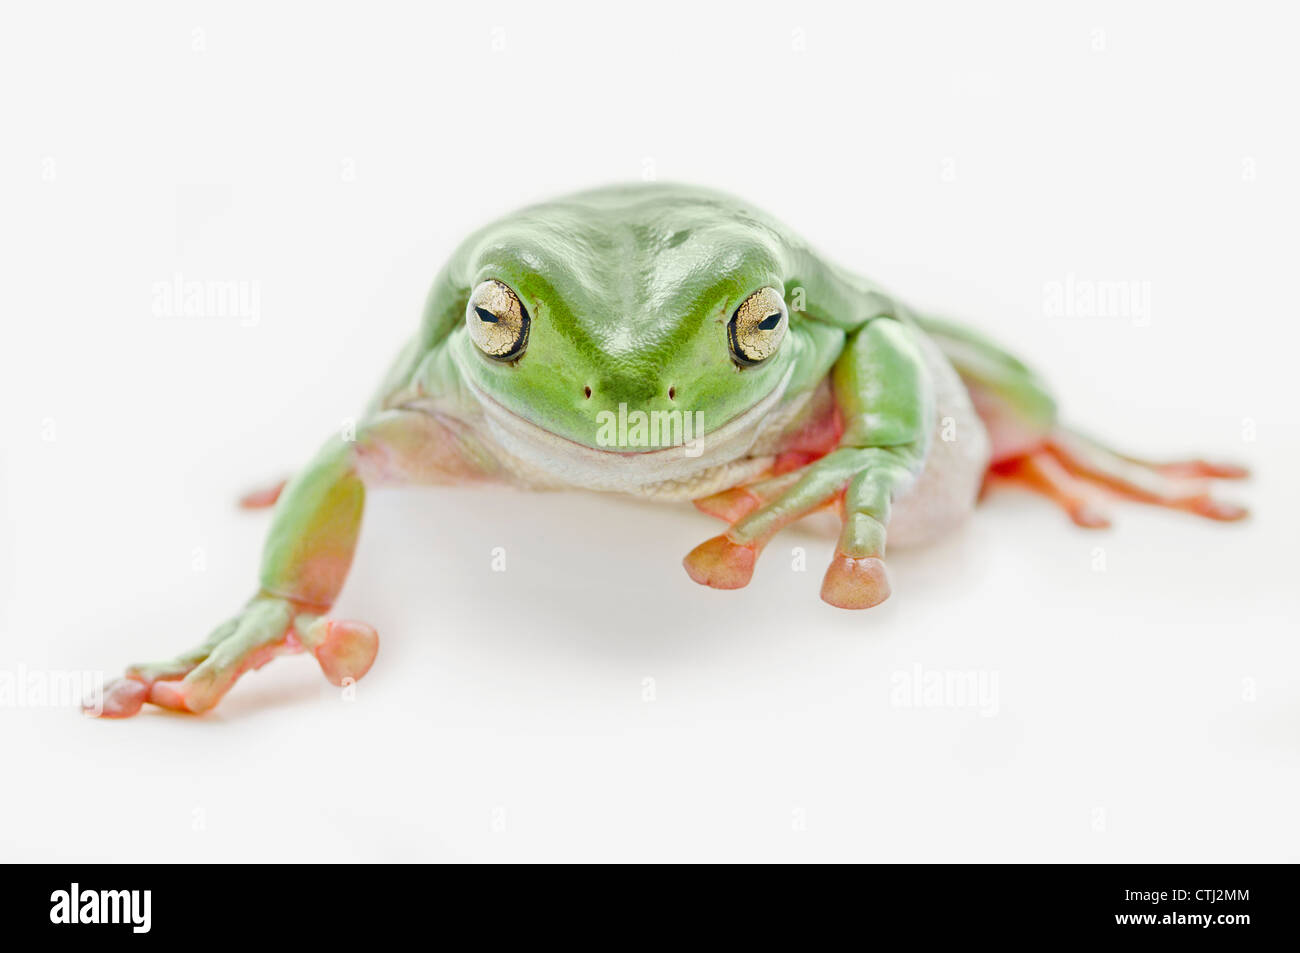 Dicken grünen Laubfrosch auf weißem Hintergrund Stockfoto